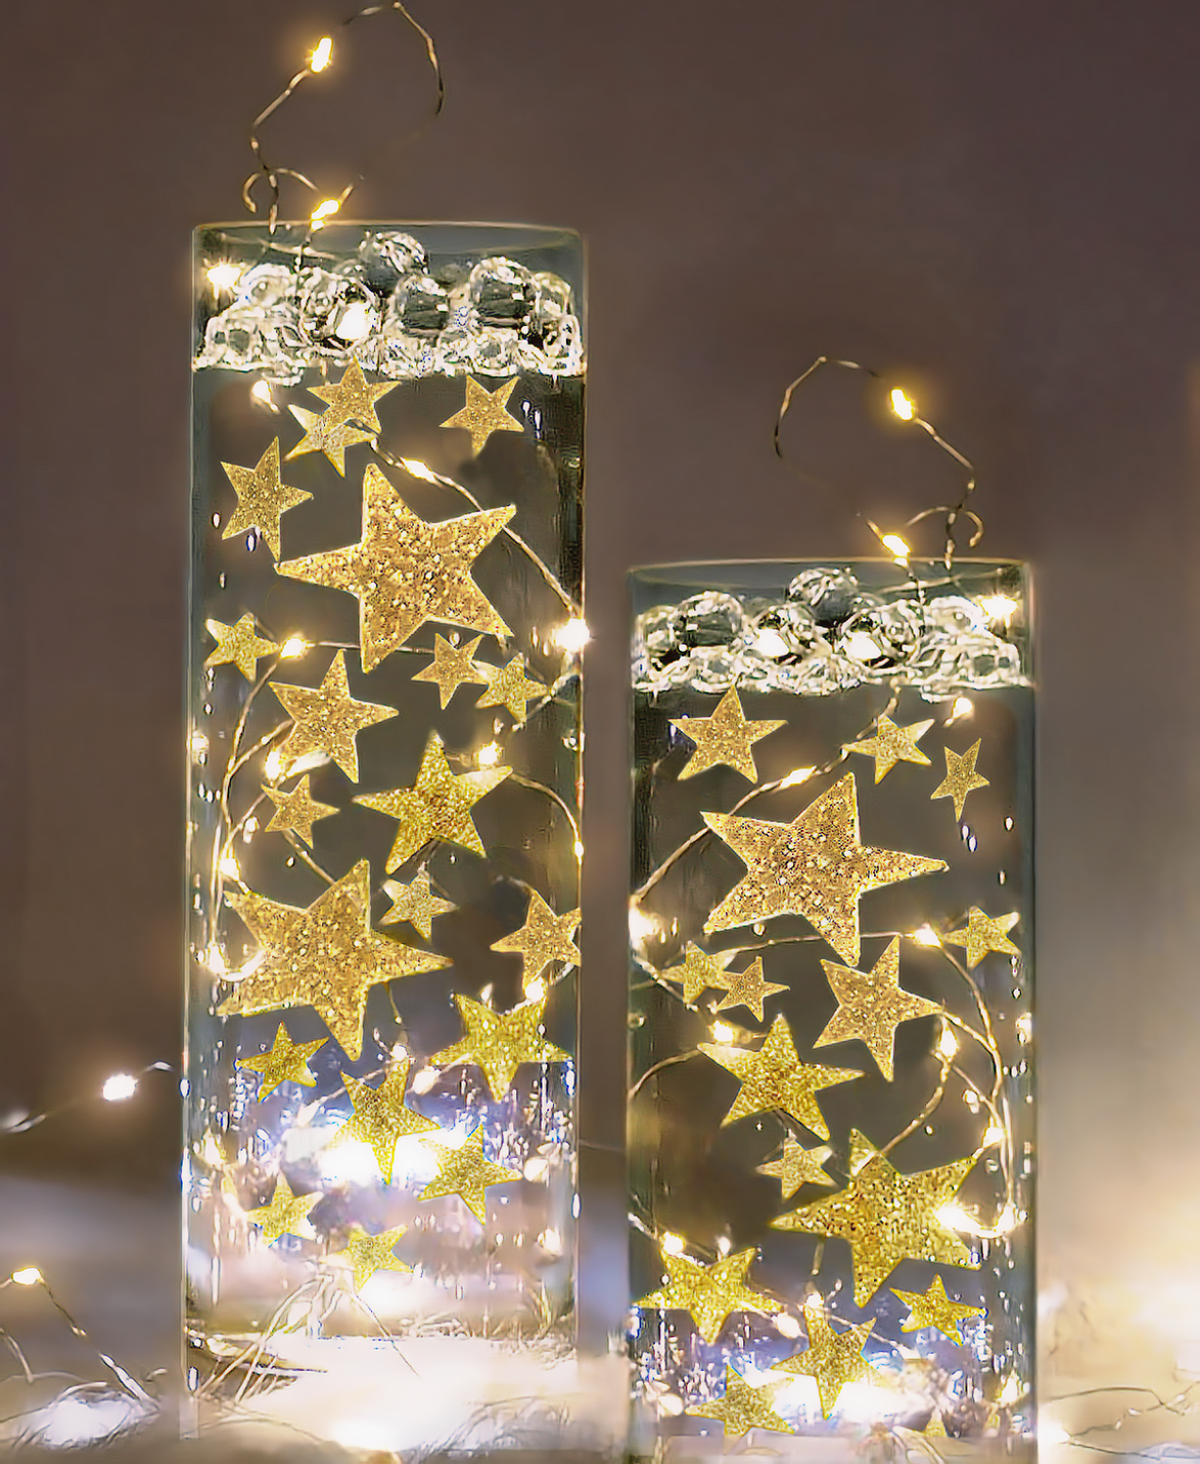 النجوم الذهبية اللامعة "العائمة" مع خيار أضواء الجنية - زخارف مزهرية - مبعثر طاولة